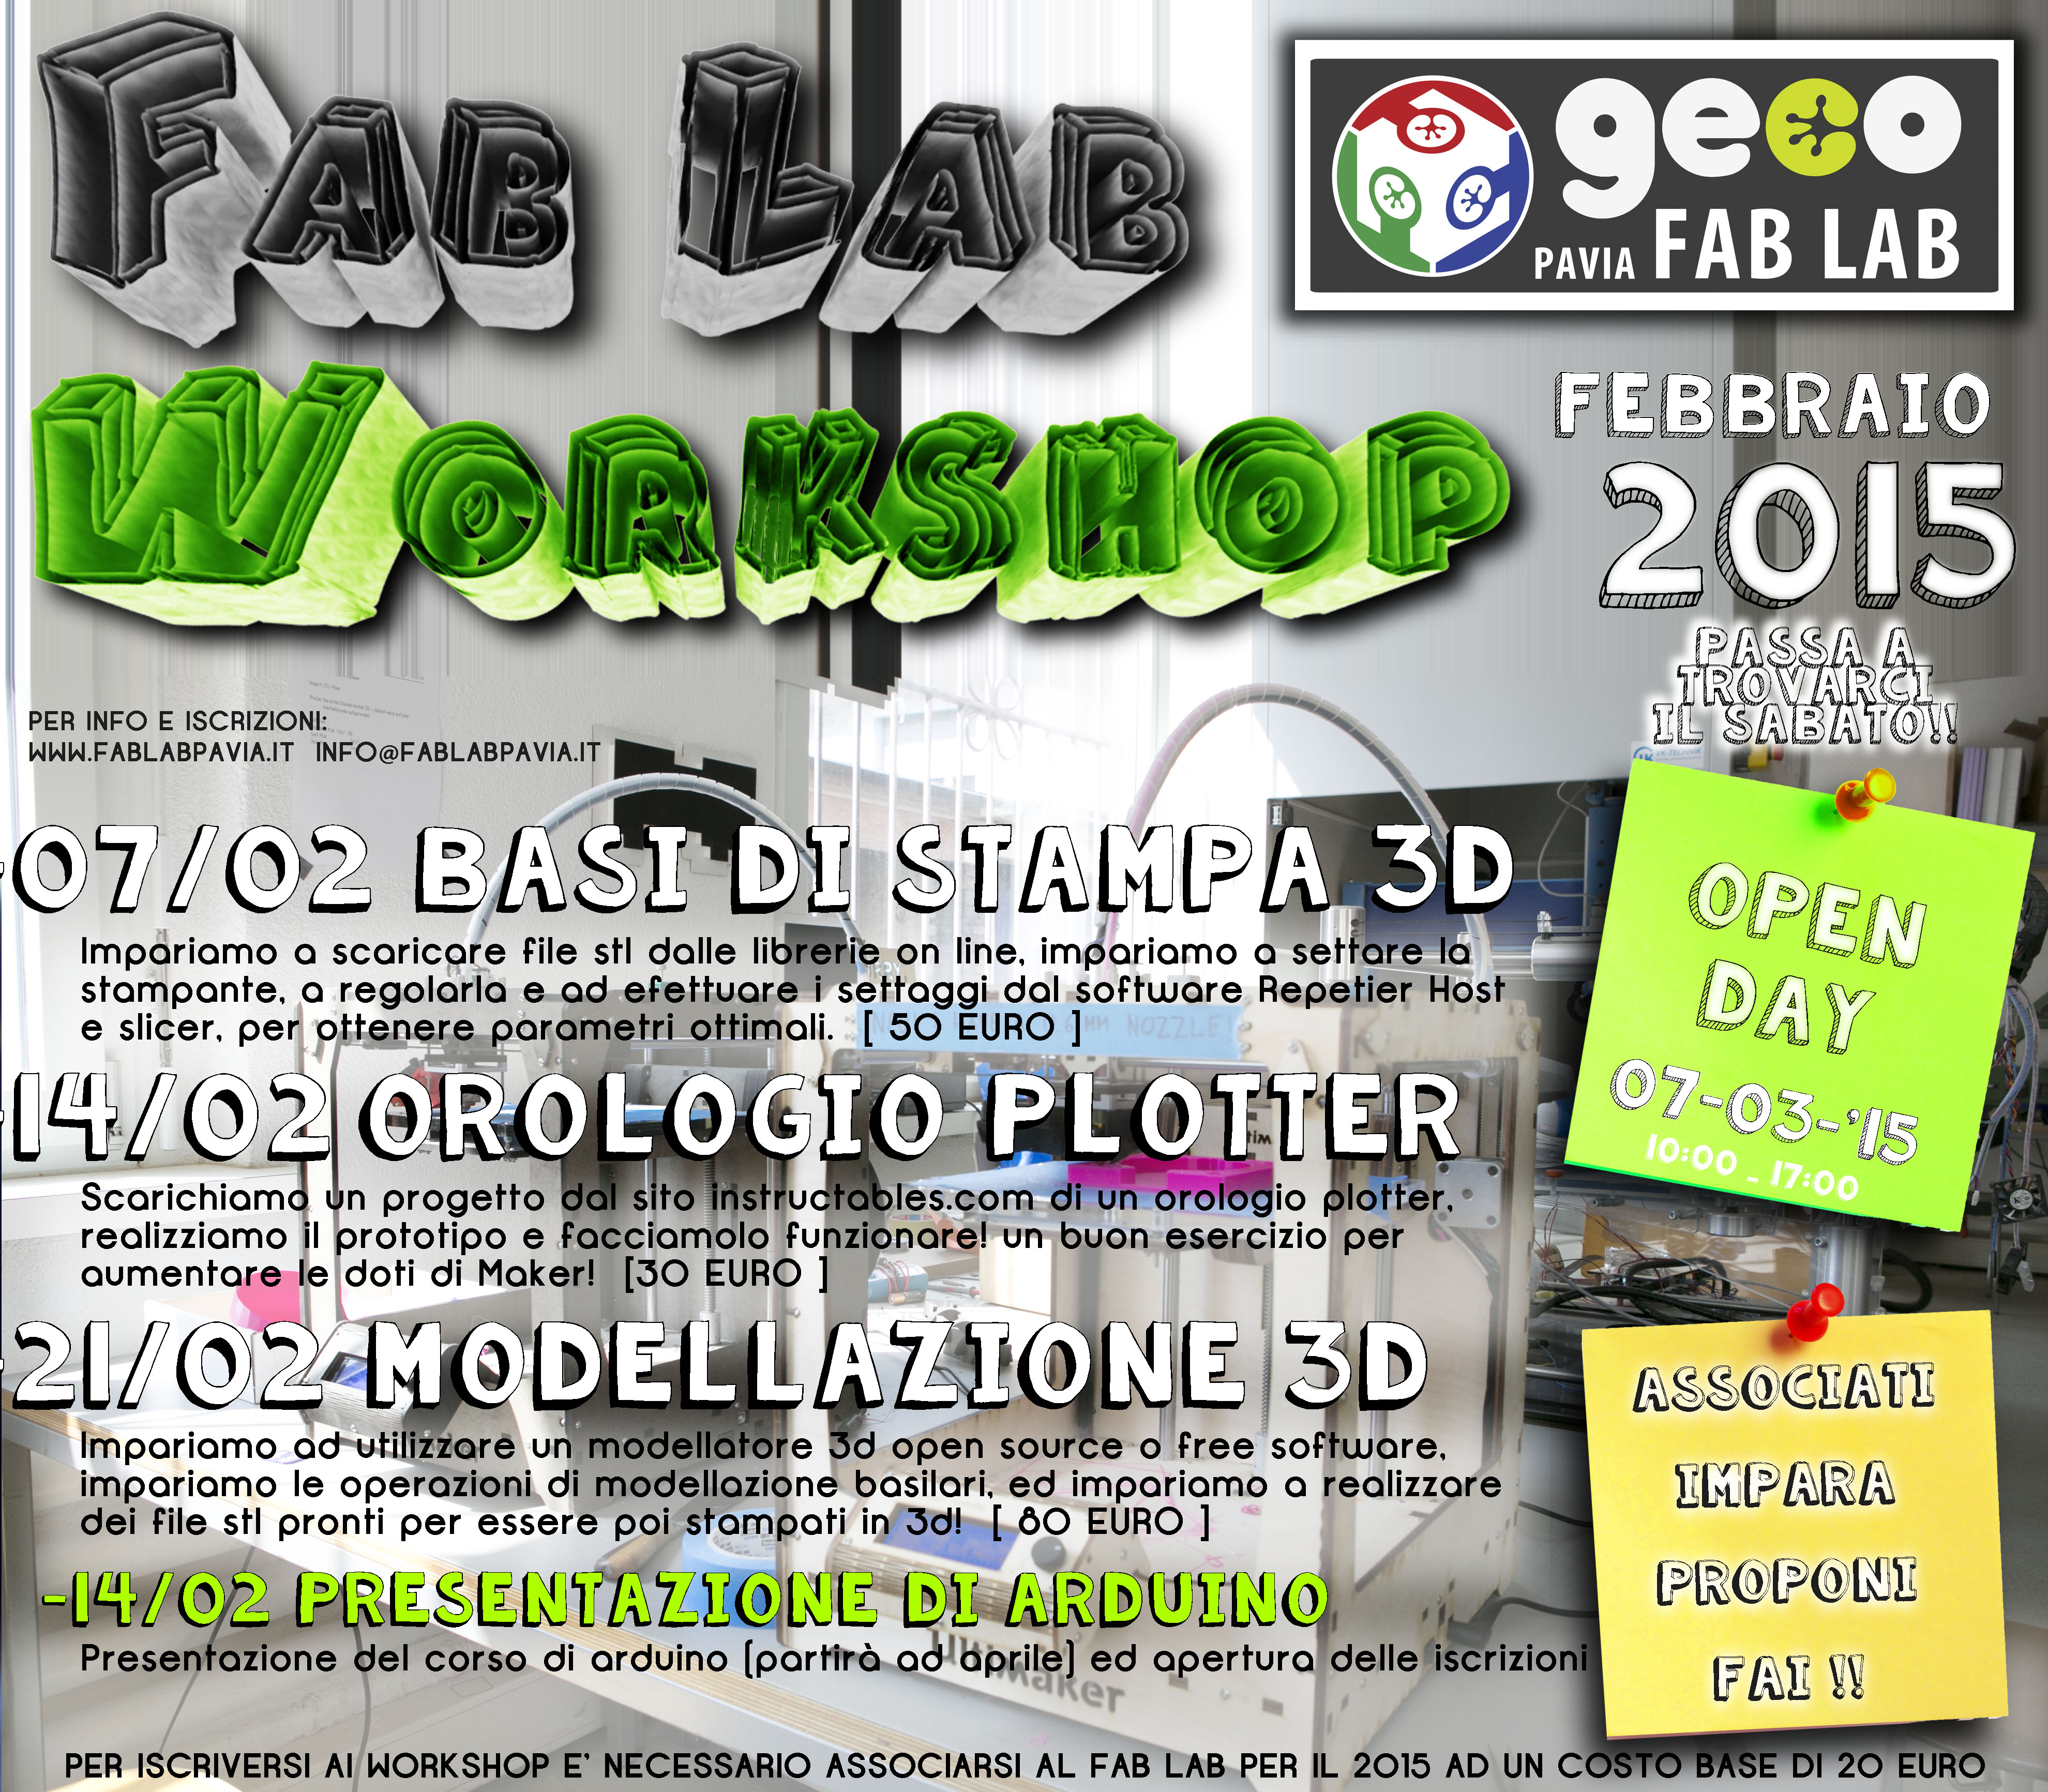 WORKSHOP febbraio 2015 al Fab Lab Pavia!!